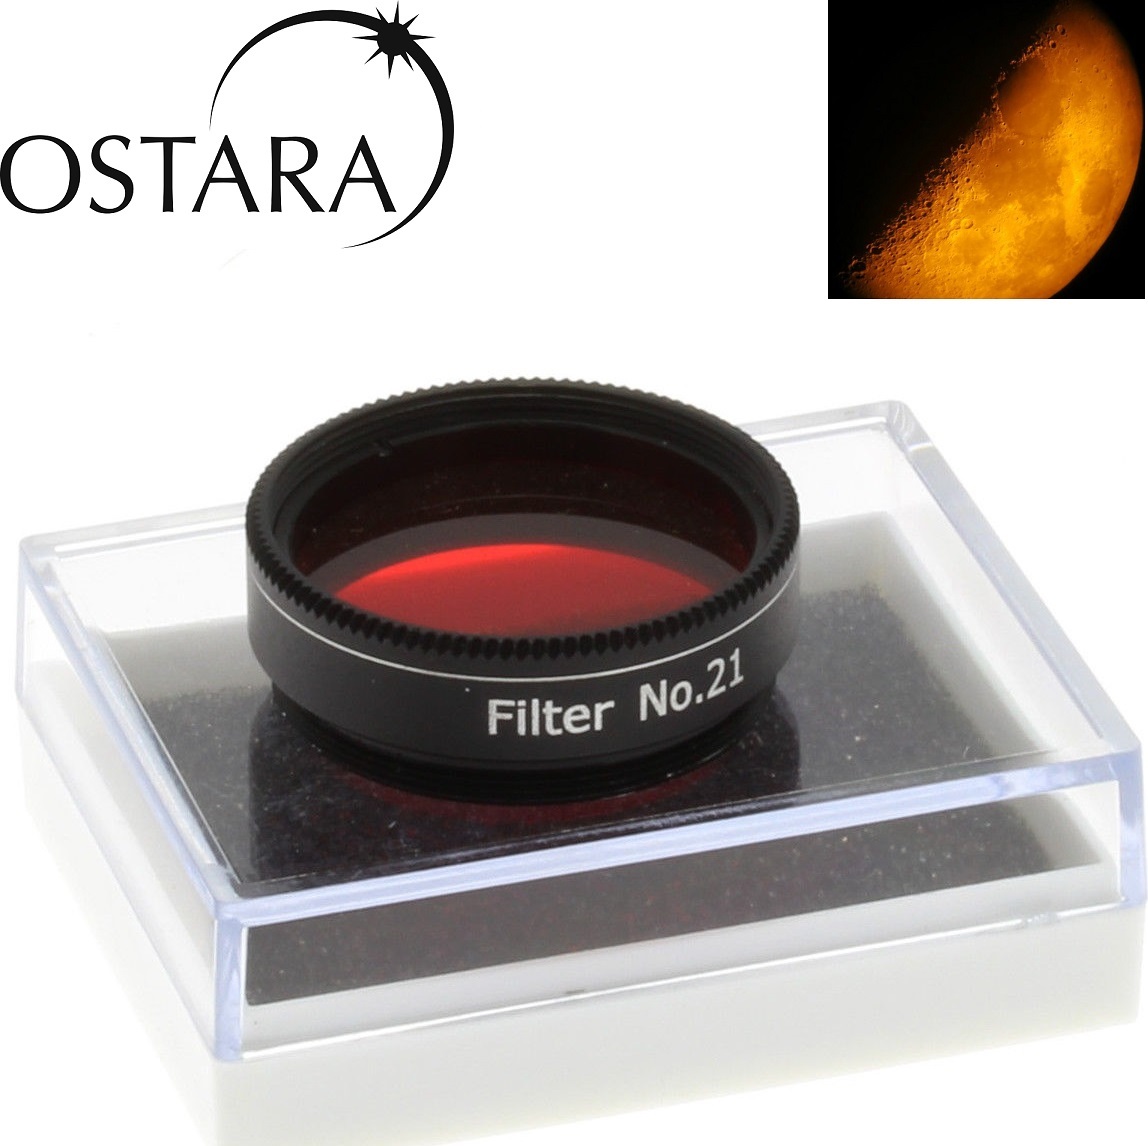 Ostara High Quality Colour 21 Filter 1.25 Orange